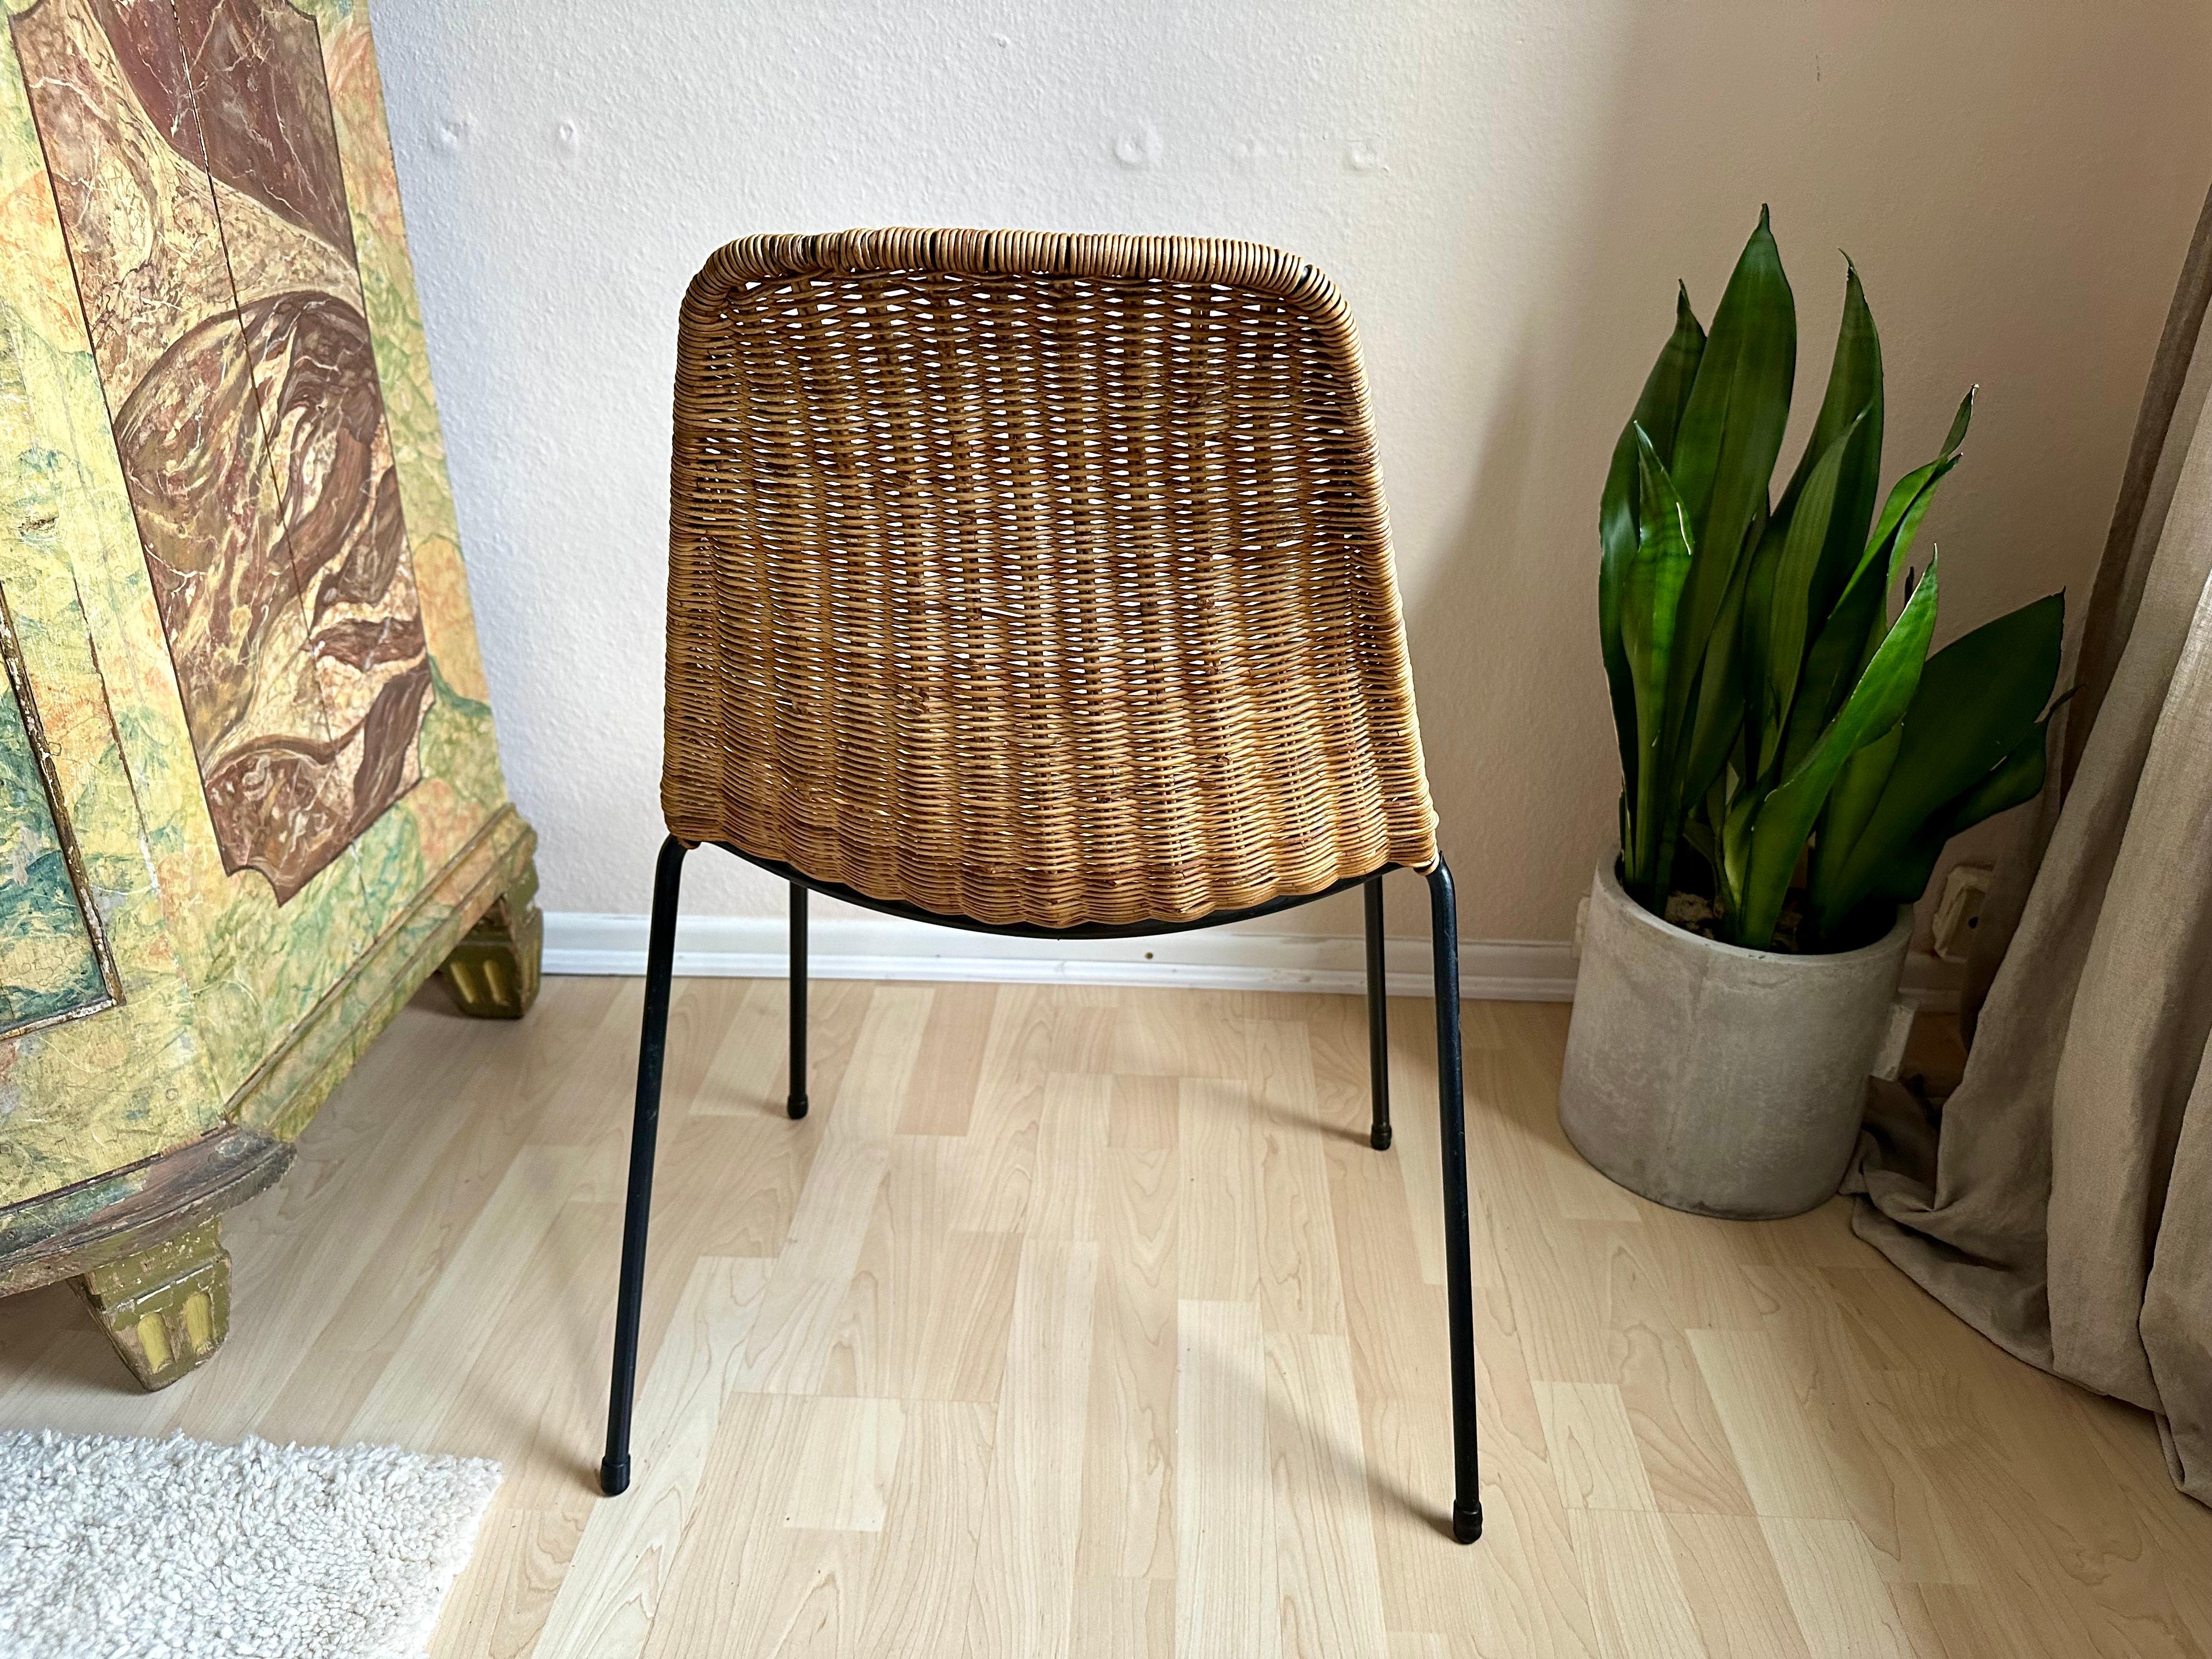 Italian Timeless Elegance: Gian Franco Legler's Boho Basket Chair in Rattan For Sale